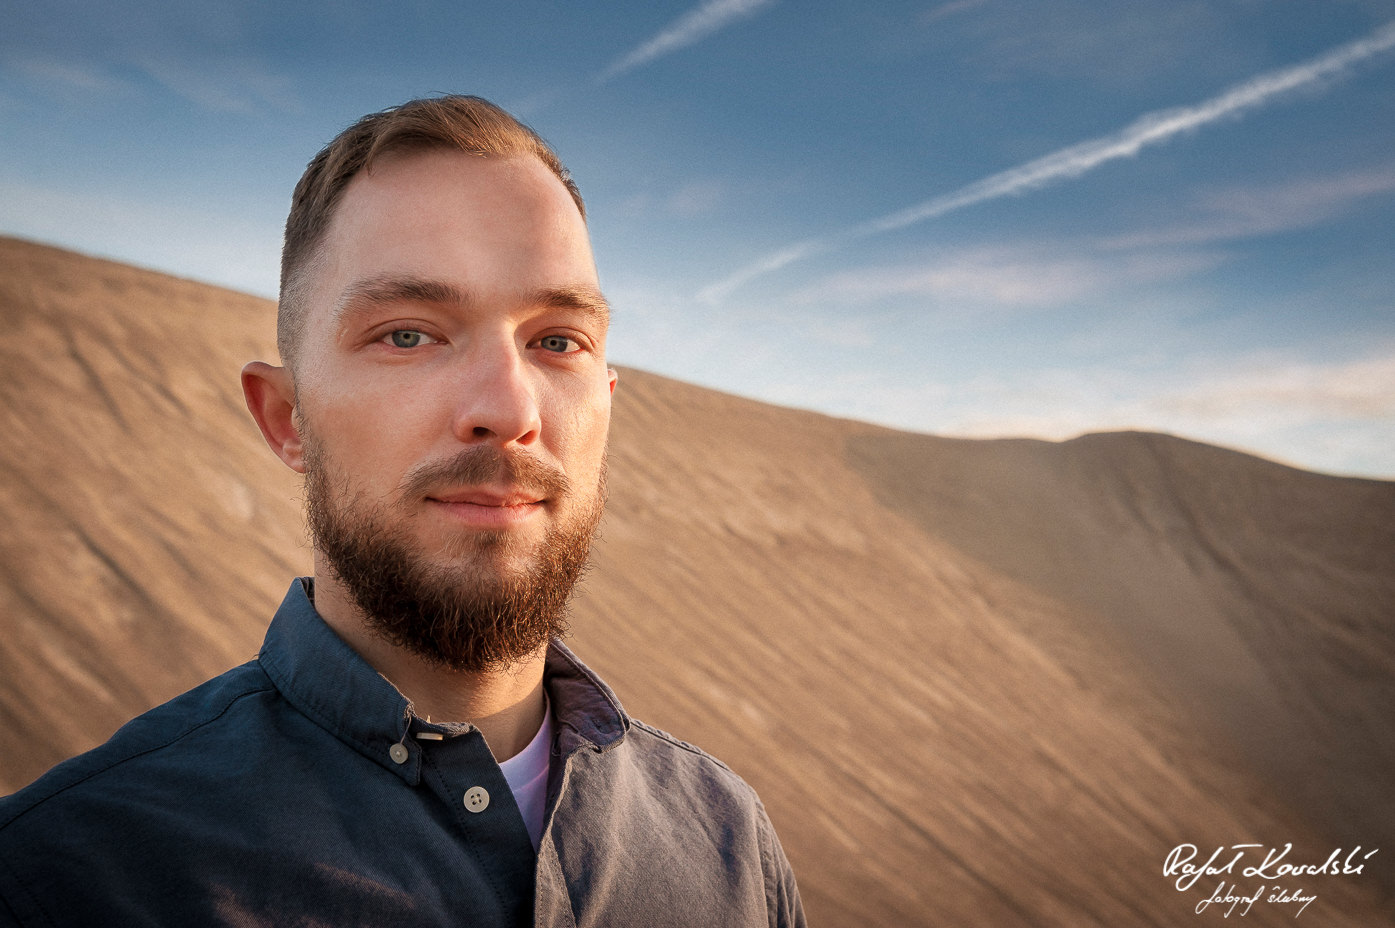 Sesja na wydmach fotograf gdańsk Rafał Kowalski -męski portret w pustynnym klimacie